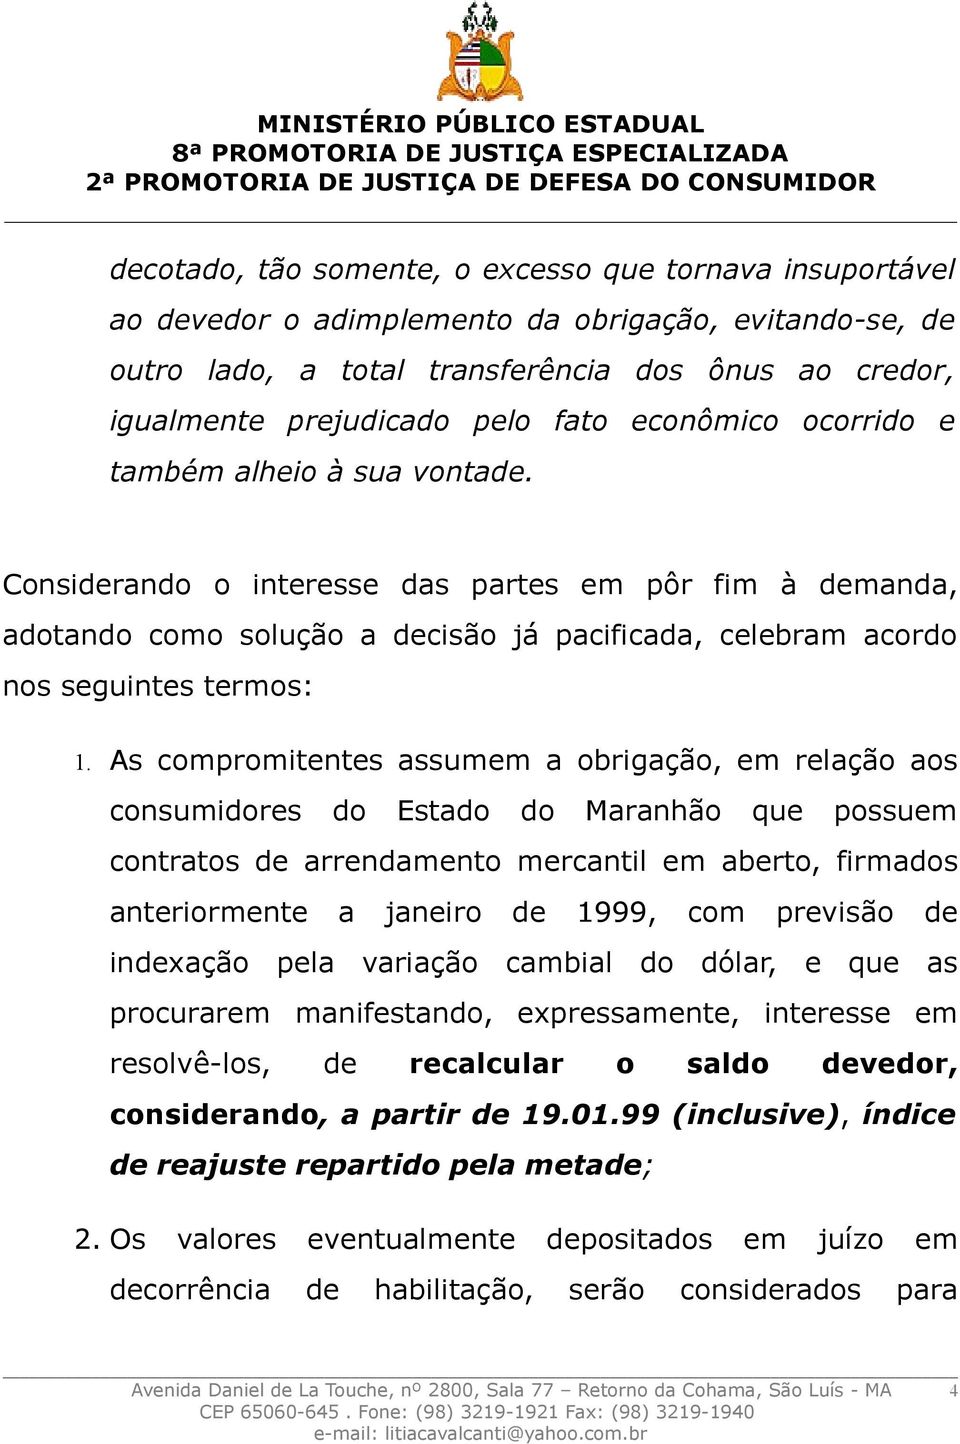 As compromitentes assumem a obrigação, em relação aos consumidores do Estado do Maranhão que possuem contratos de arrendamento mercantil em aberto, firmados anteriormente a janeiro de 1999, com